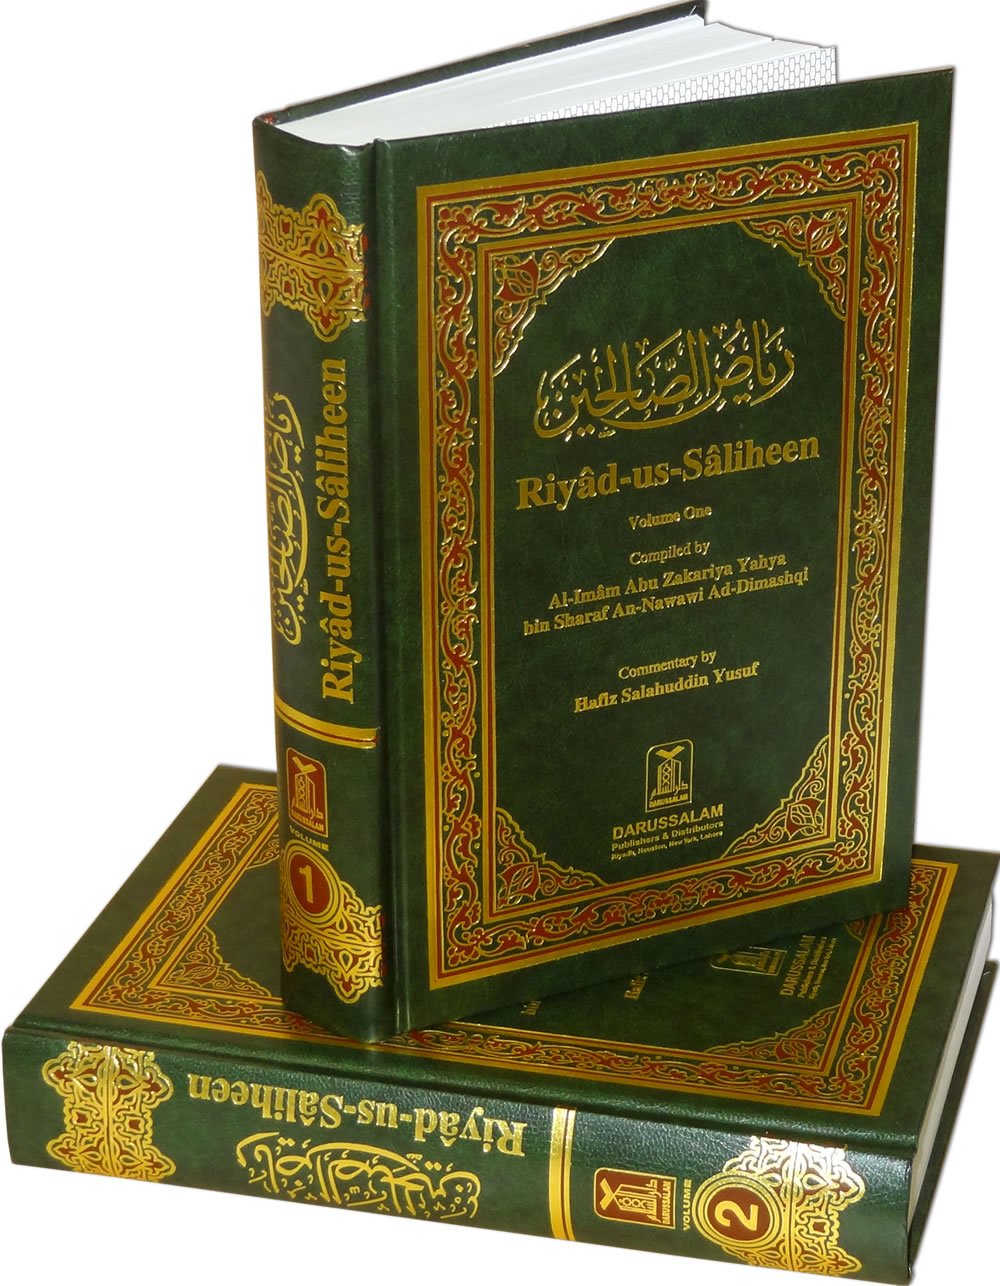 Riyadh al-Saliheen (Vol 1 and Vol 2)